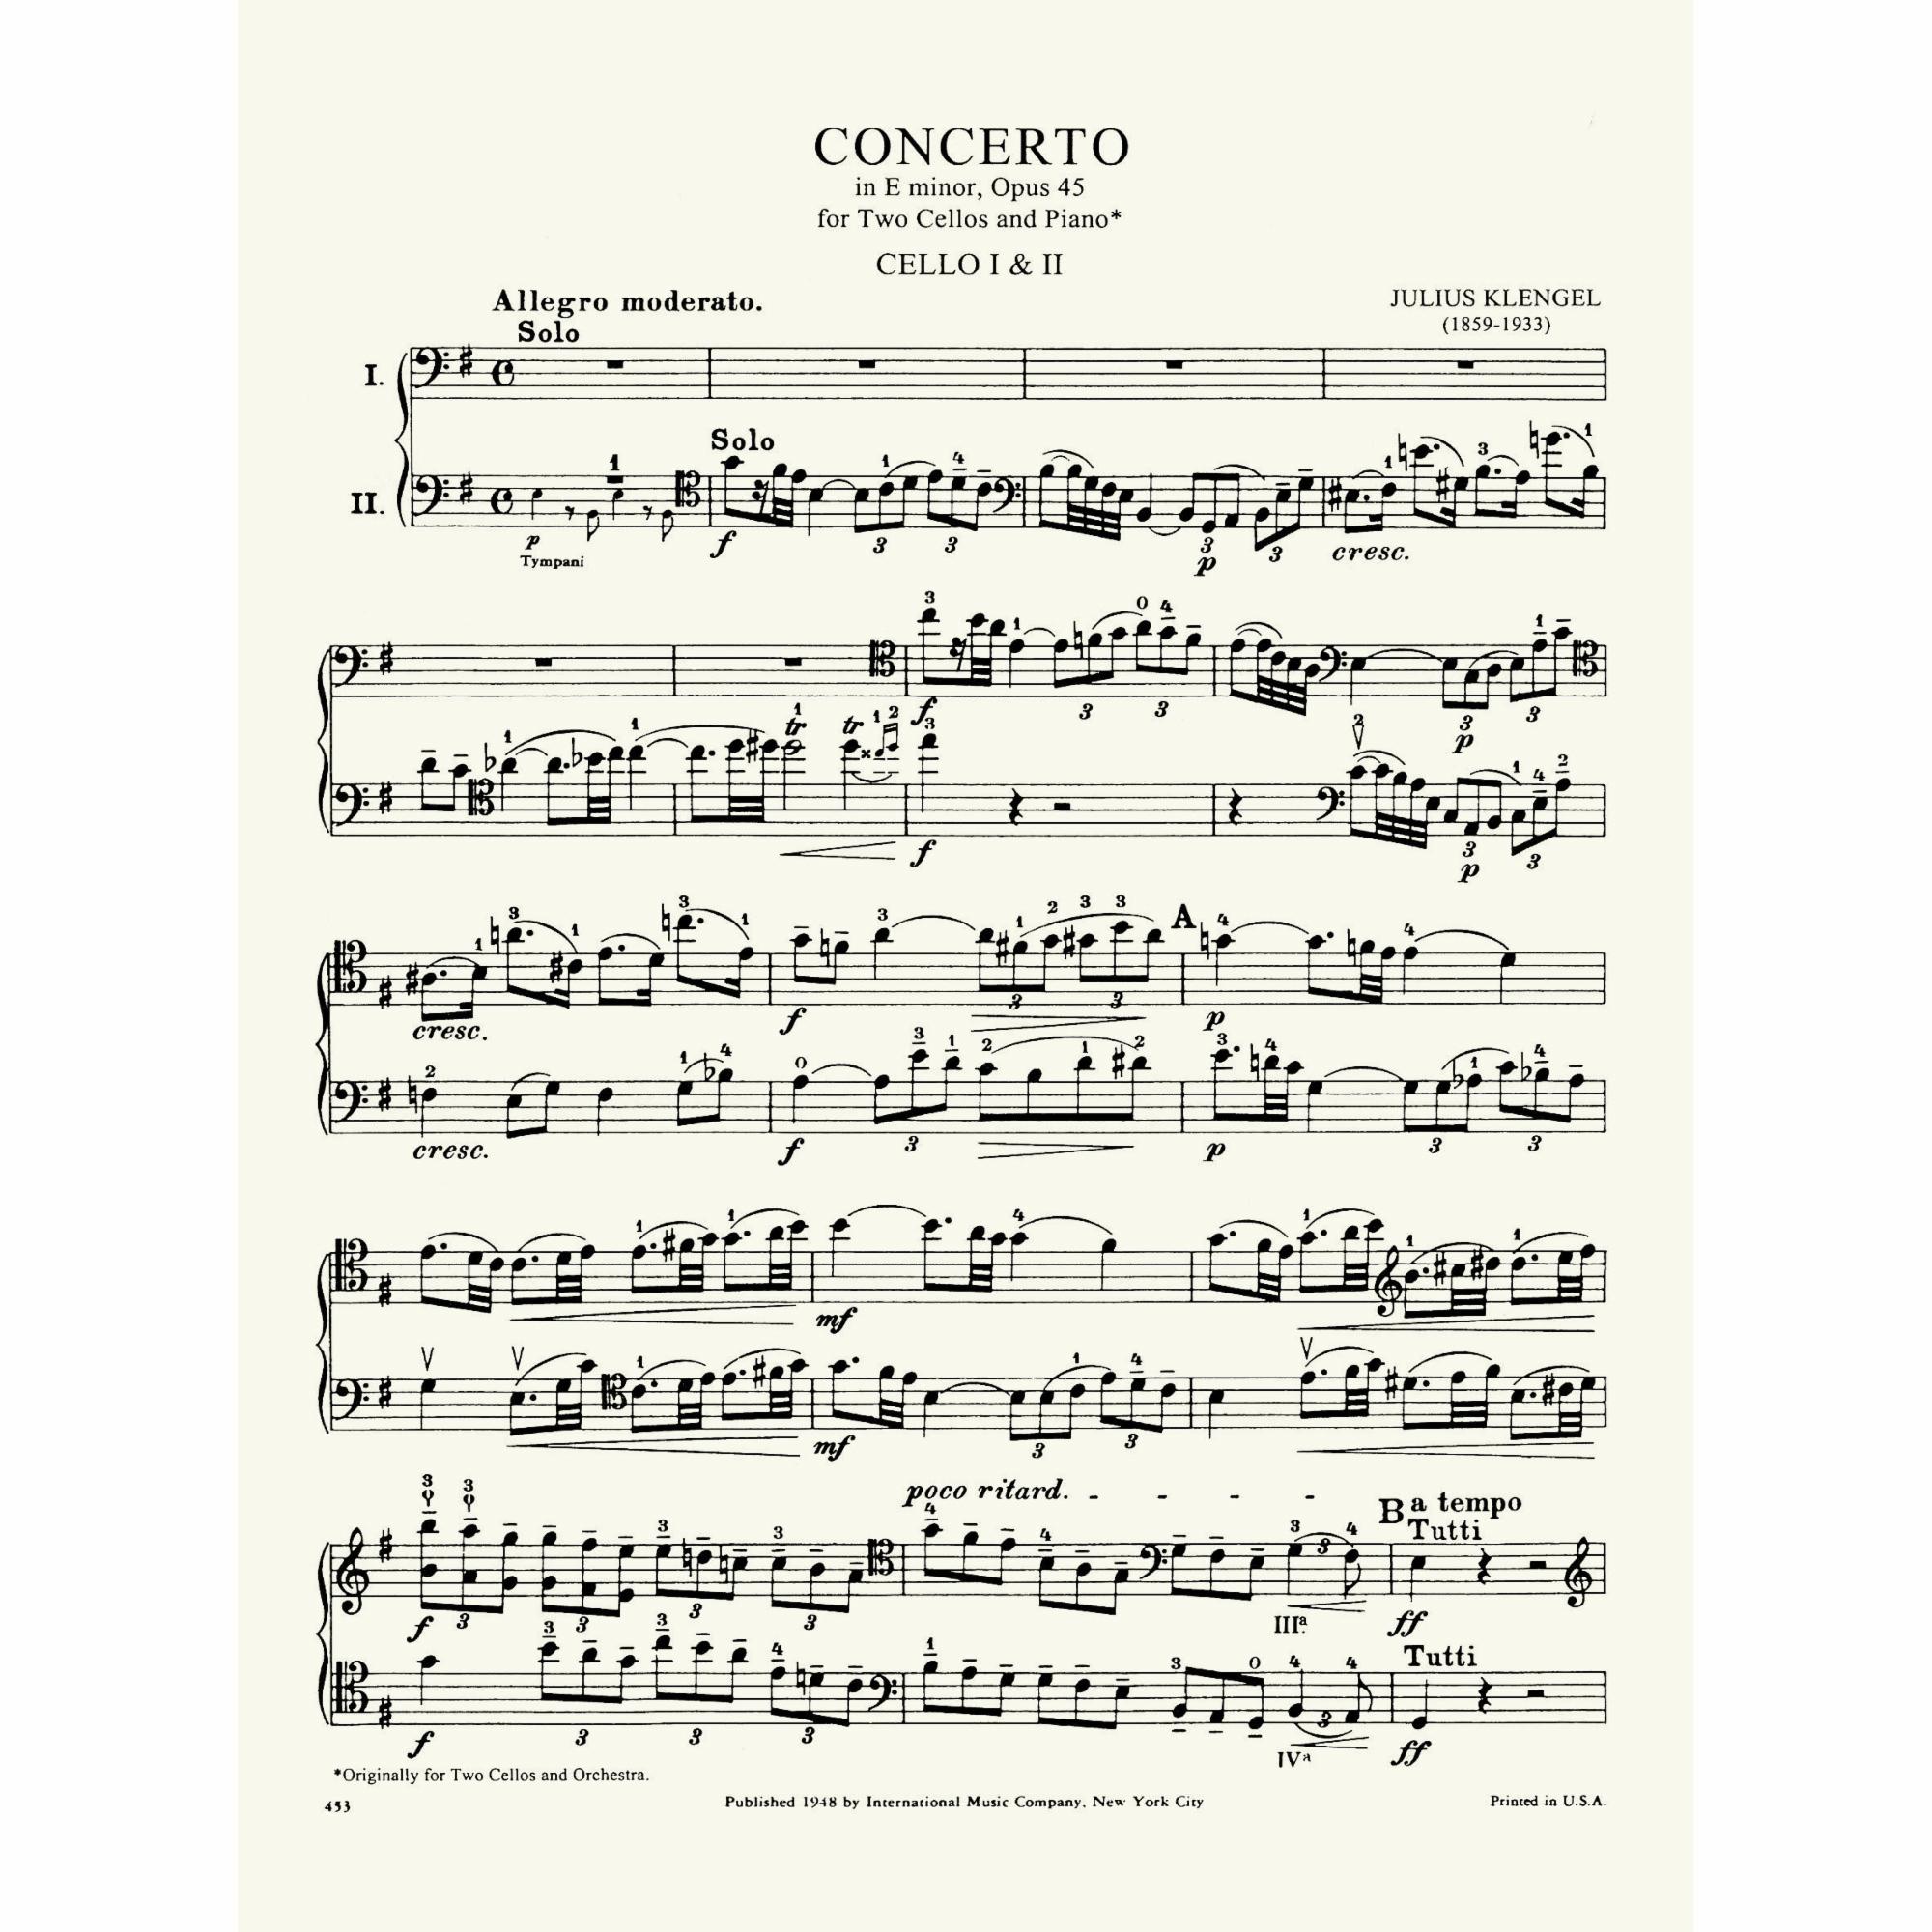 Sample: Cello Score (Pg. 1)